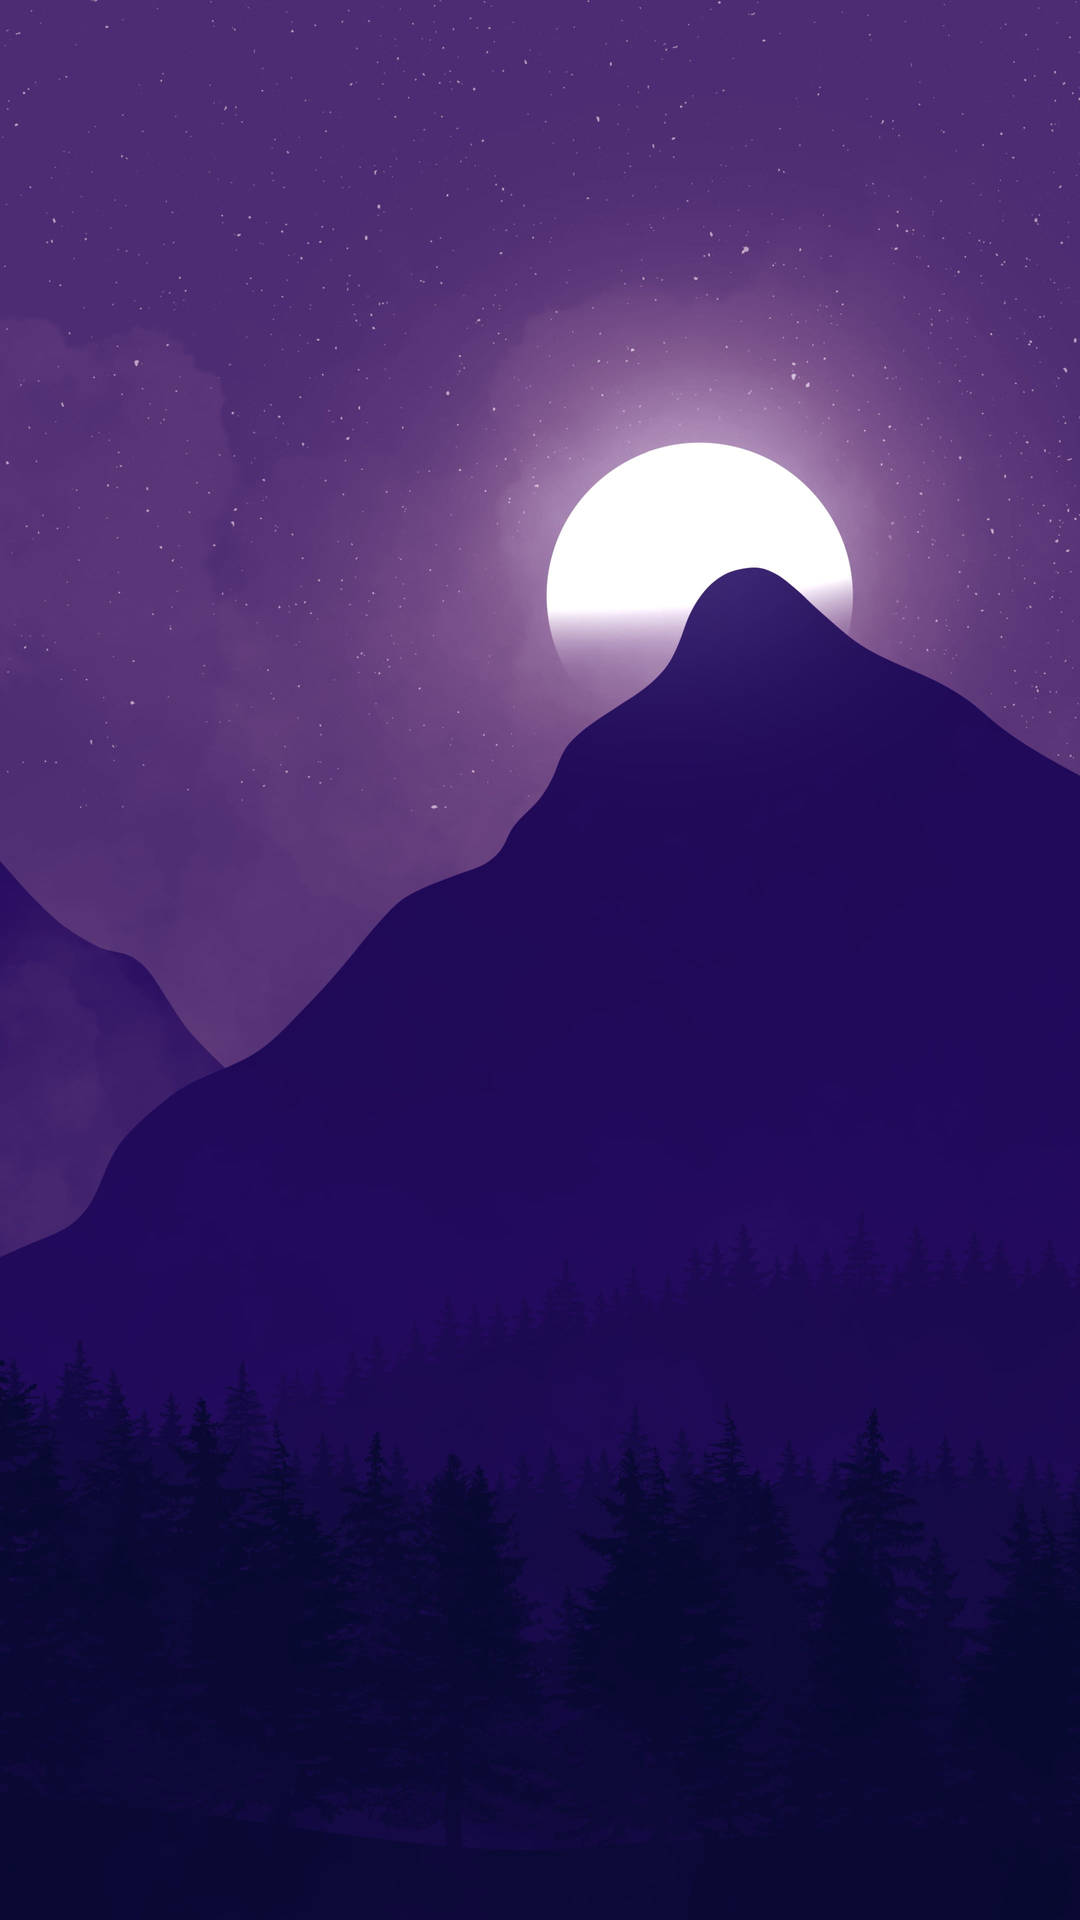 Dark Purple Mountain Moon Sky Background